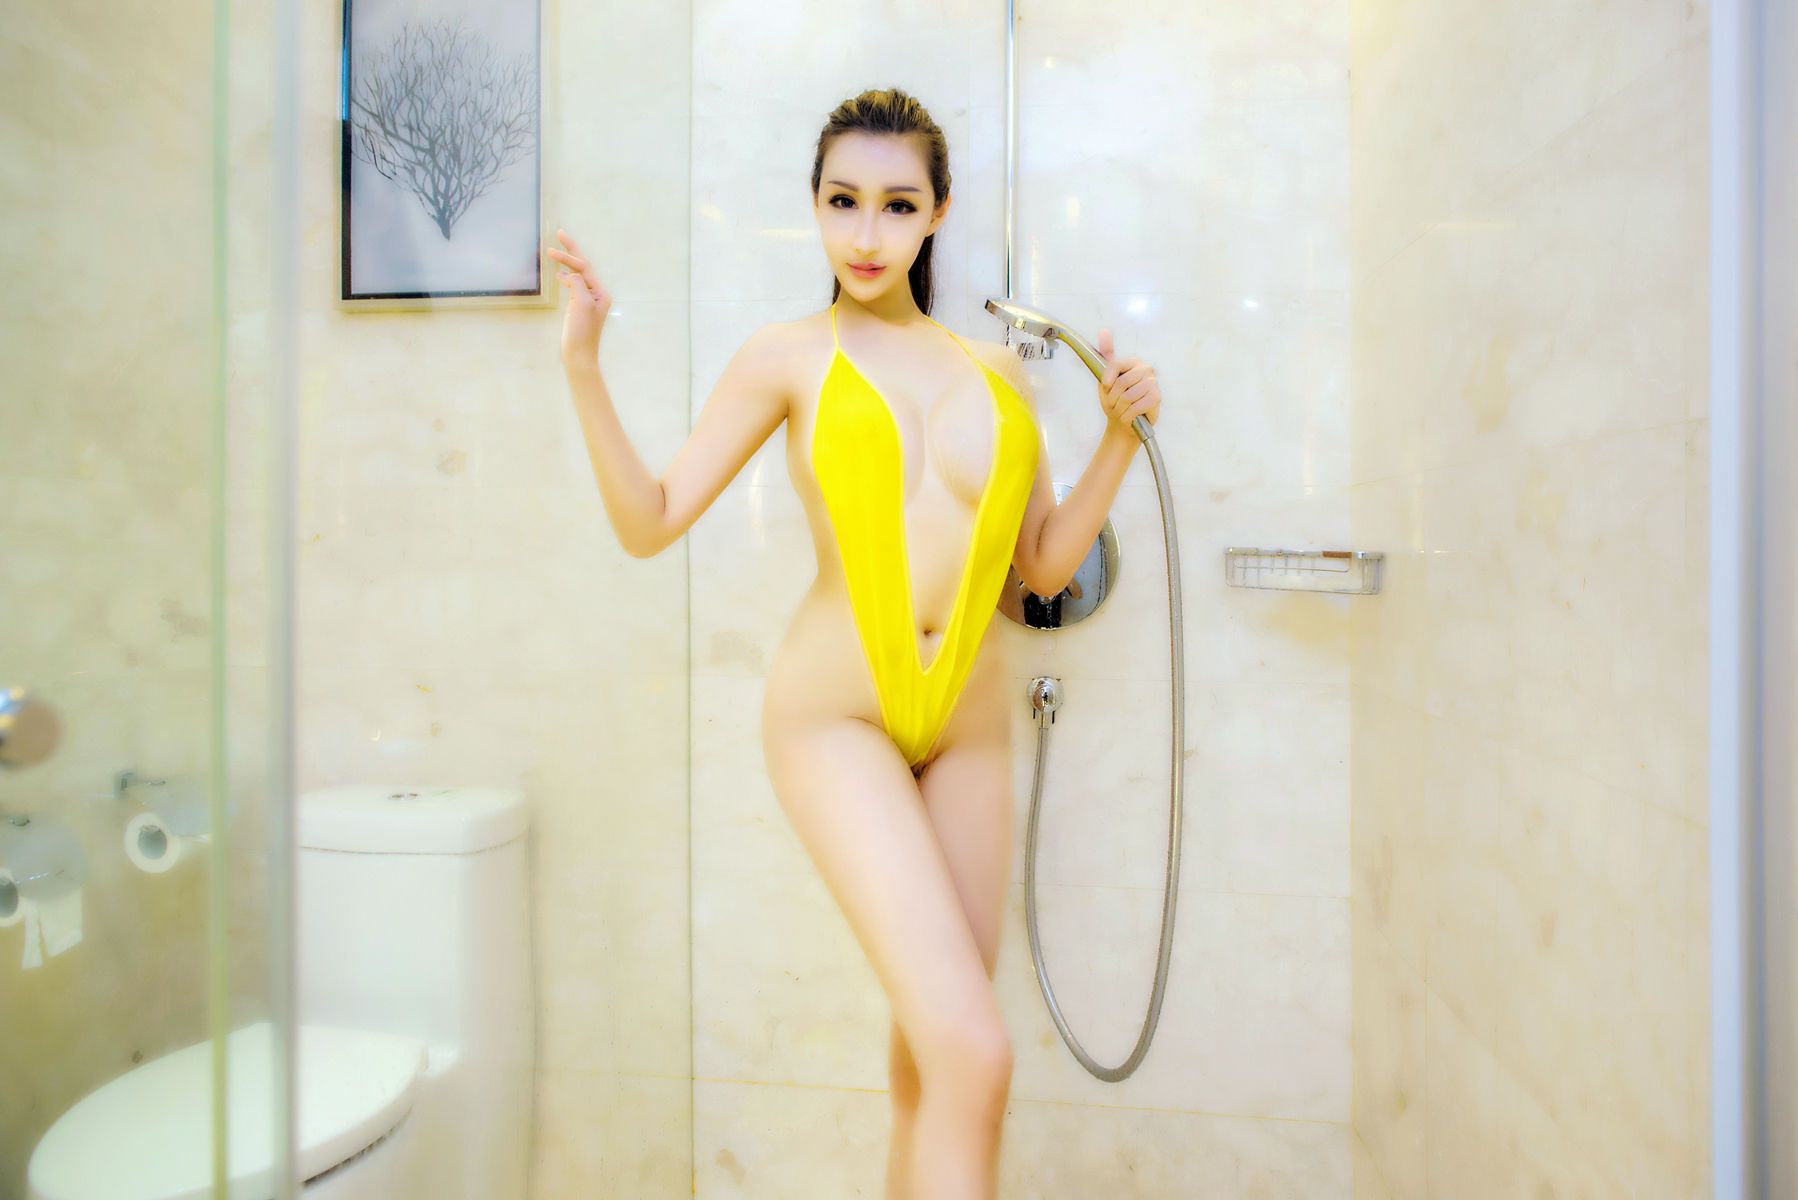 猎女神美女模特曼苏拉娜黄色吊带比基尼浴室湿身诱惑美图